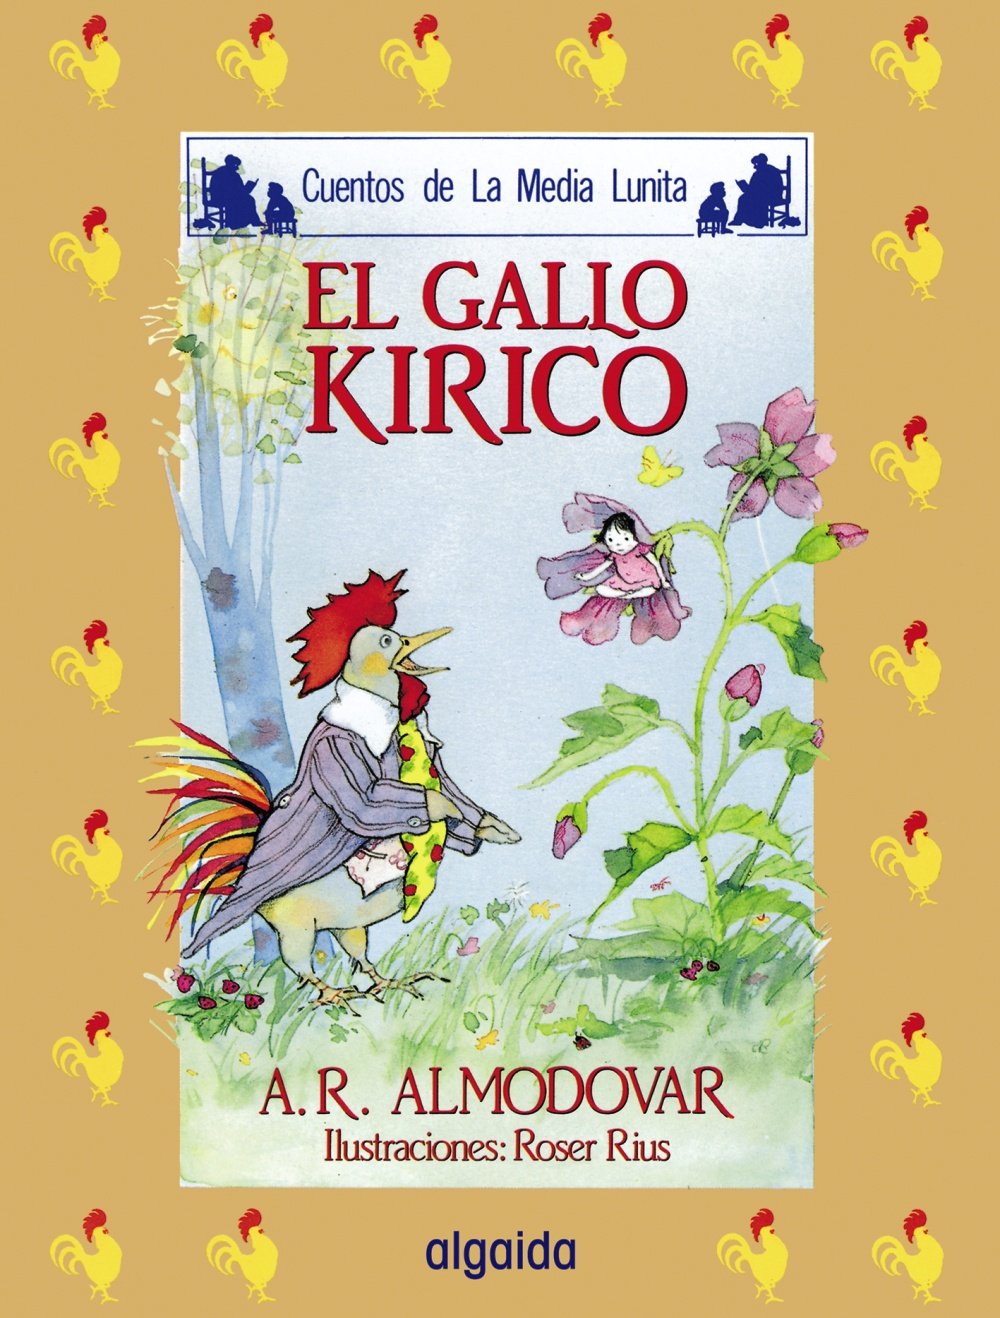 Libro: El Gallo Kirico Cuentos de la Media Lunita por Antonio Rodríguez Almodóvar